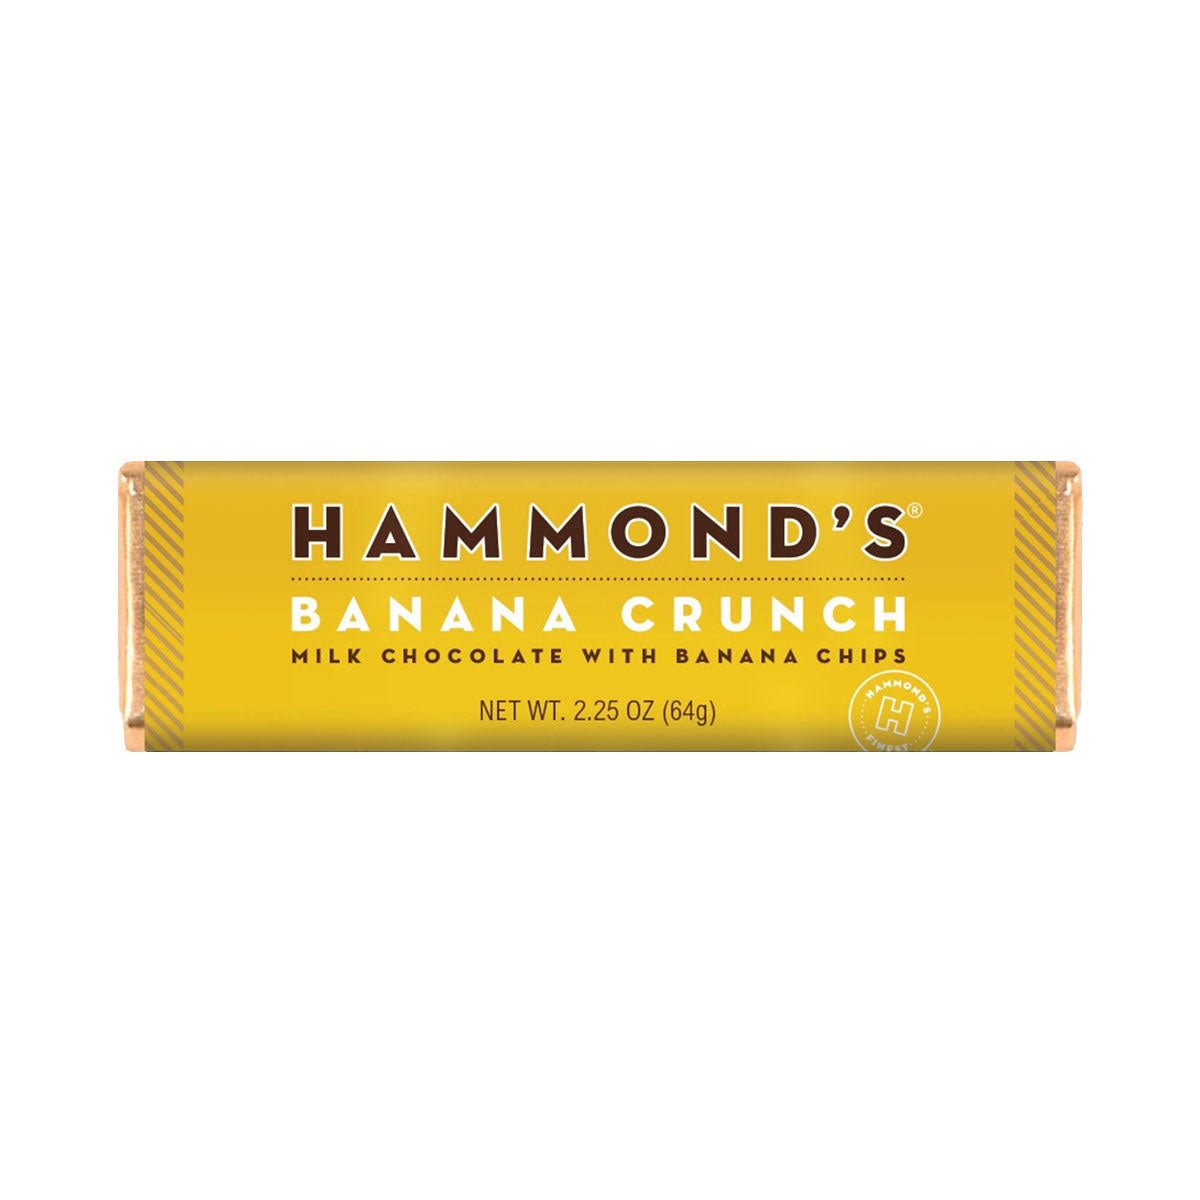 Hammond's Banana Crunch Milk Chocolate Candy Bar